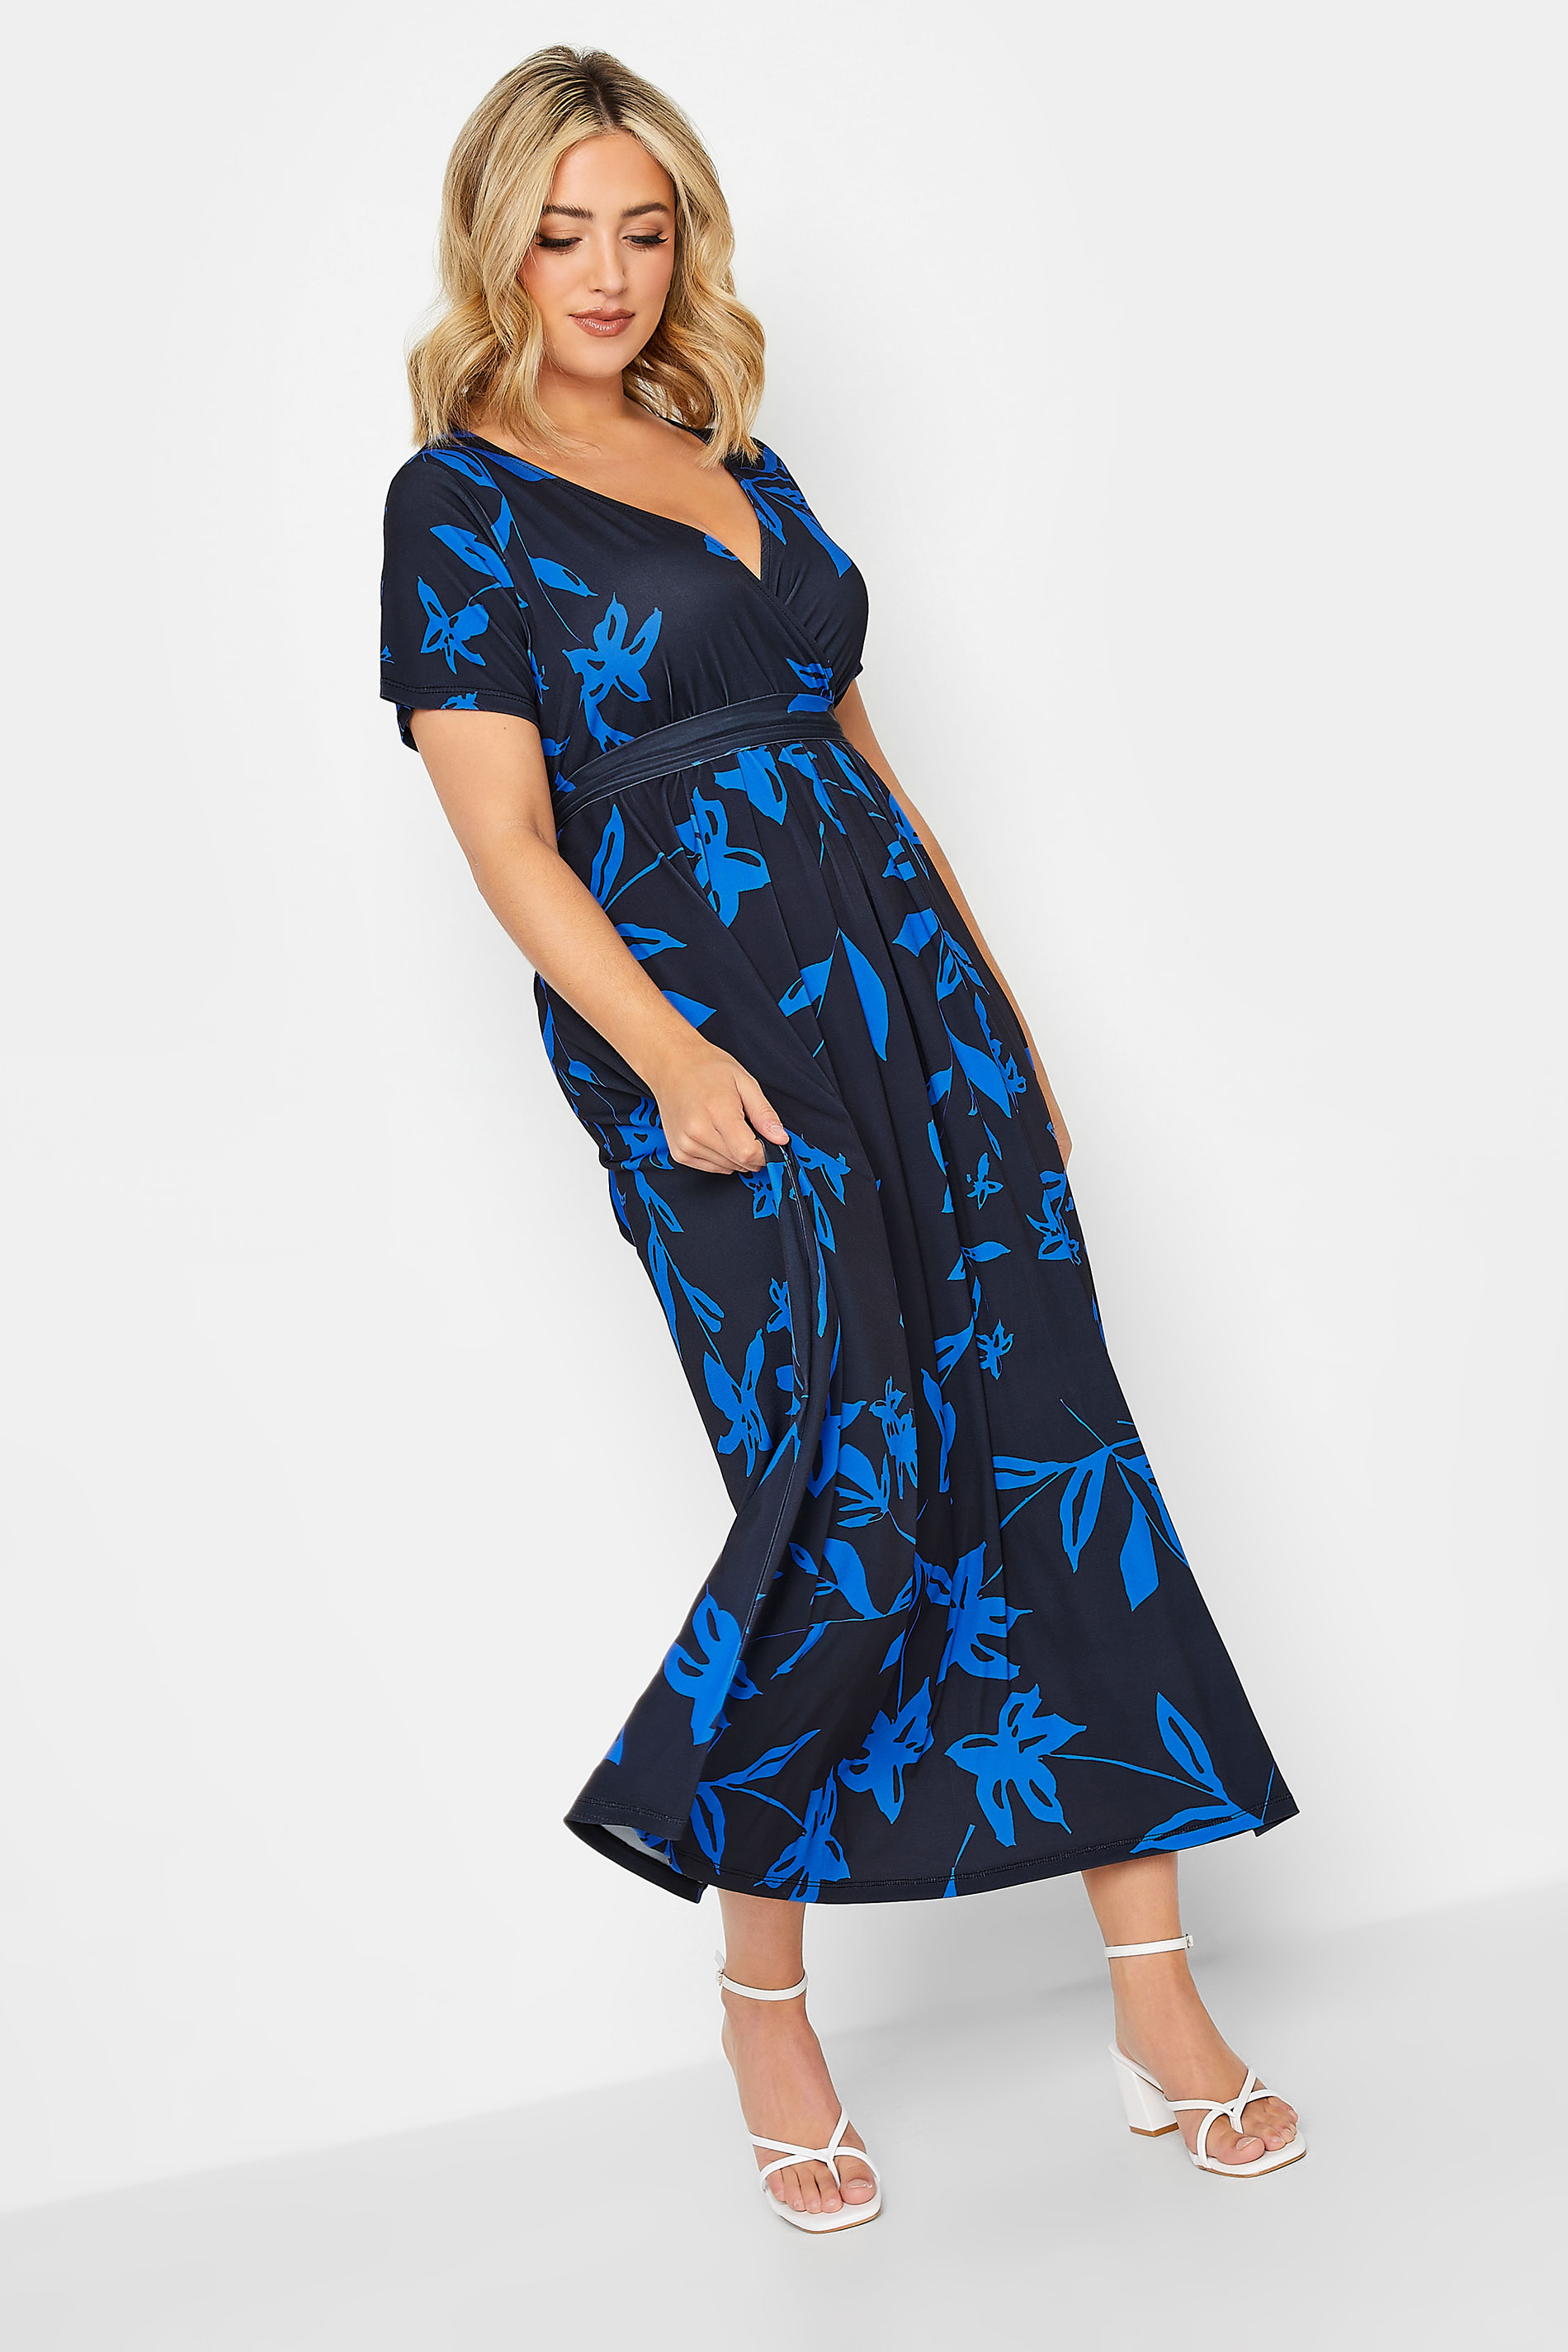 YOURS Curve Plus Size Cobalt Blue Leaf Print Maxi Wrap Dress | Yours Clothing  2